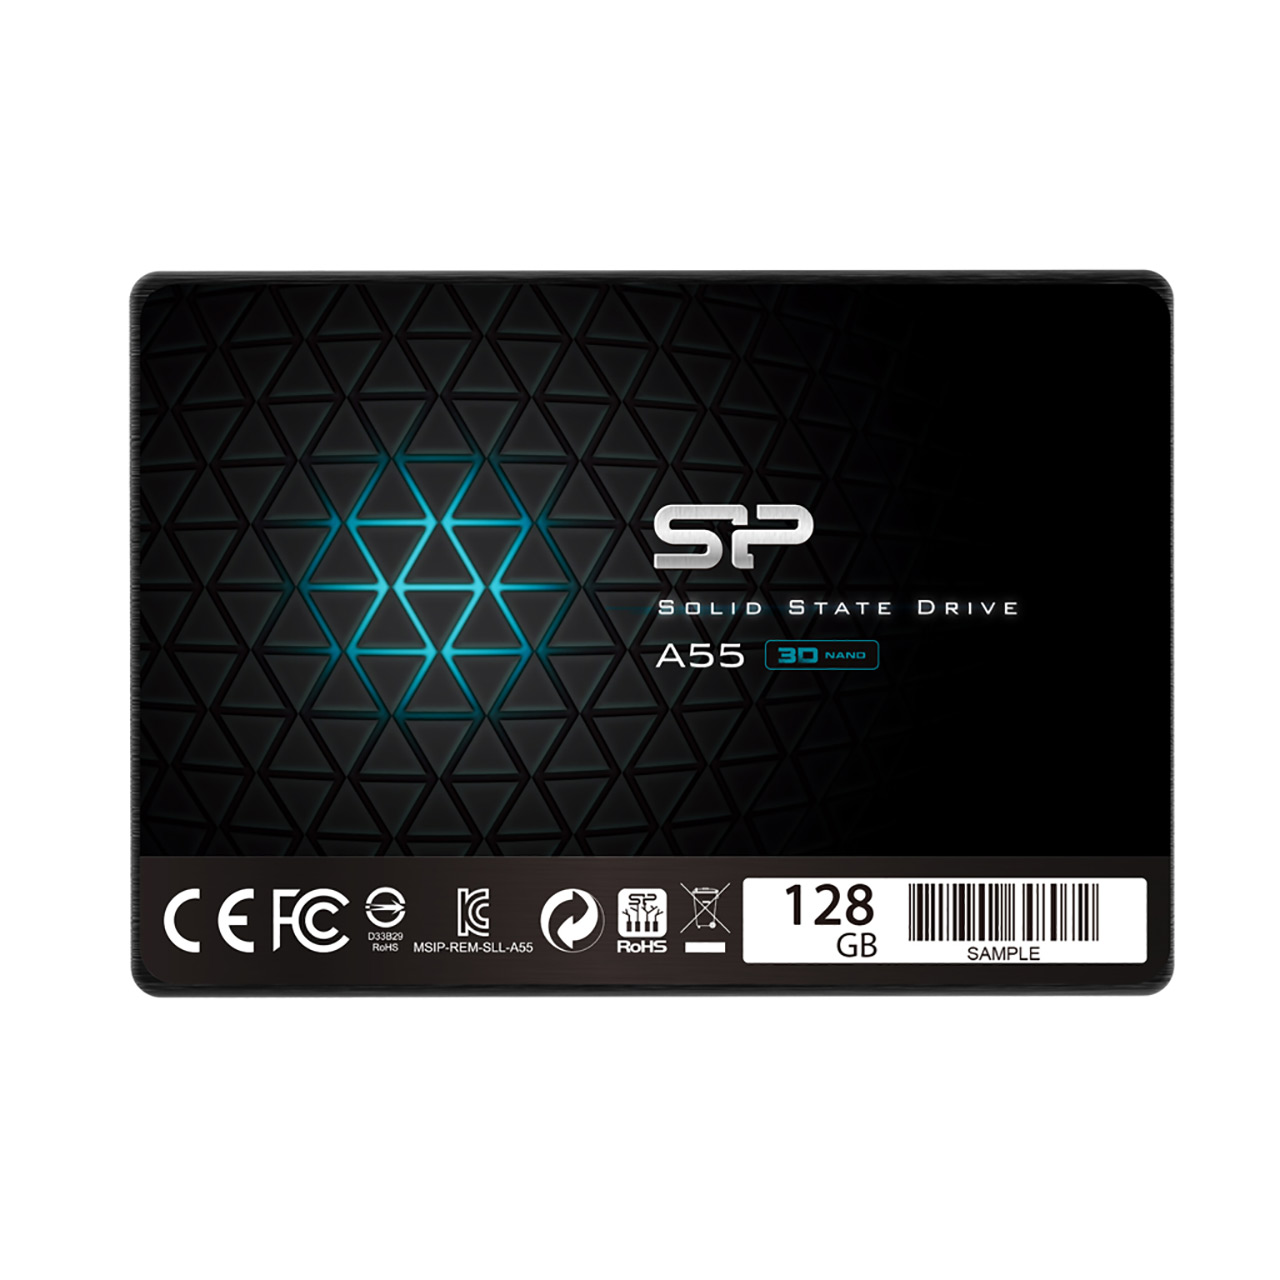 حافظه SSD برند Silicon Power مدل A55 ظرفیت 128GB 

Silicon Power A55 128GB SATA III SSD